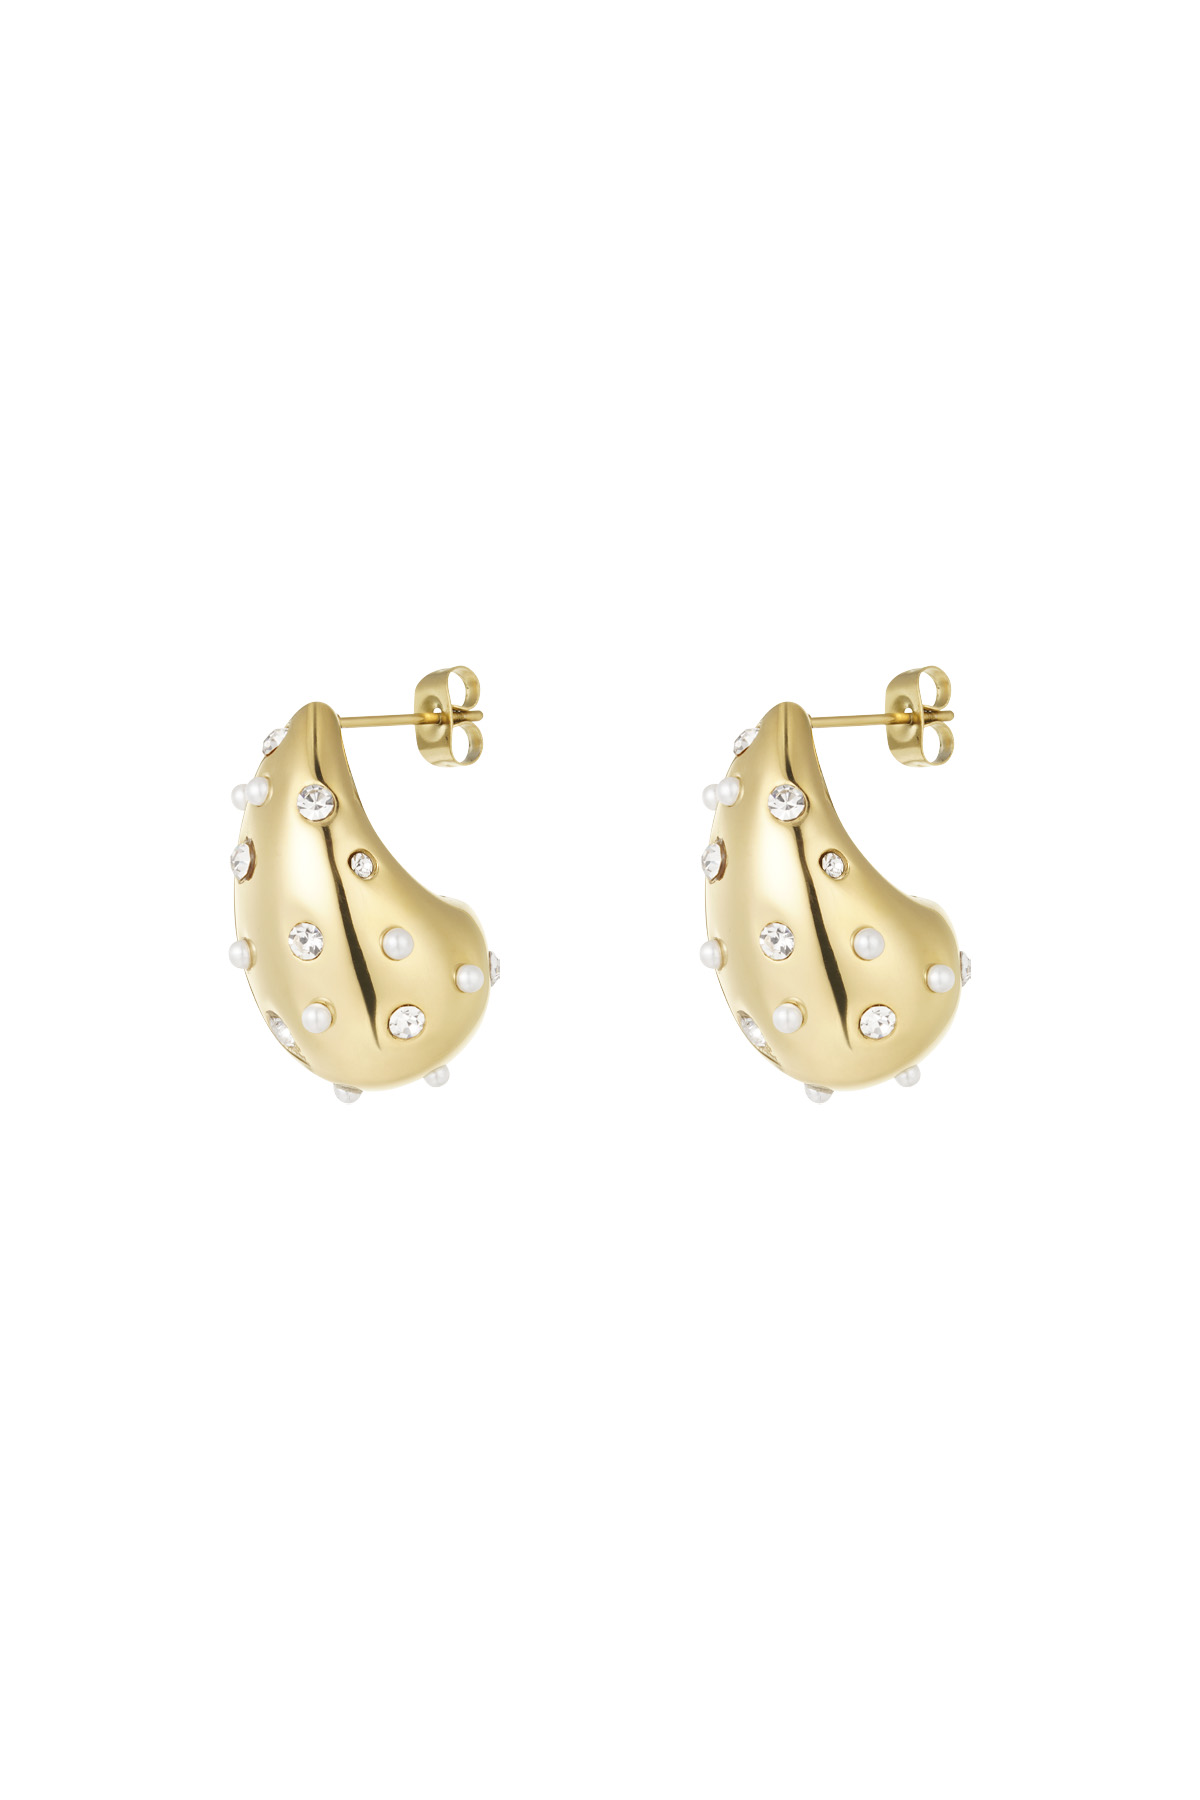 Drop earrings spice it up - gold h5 